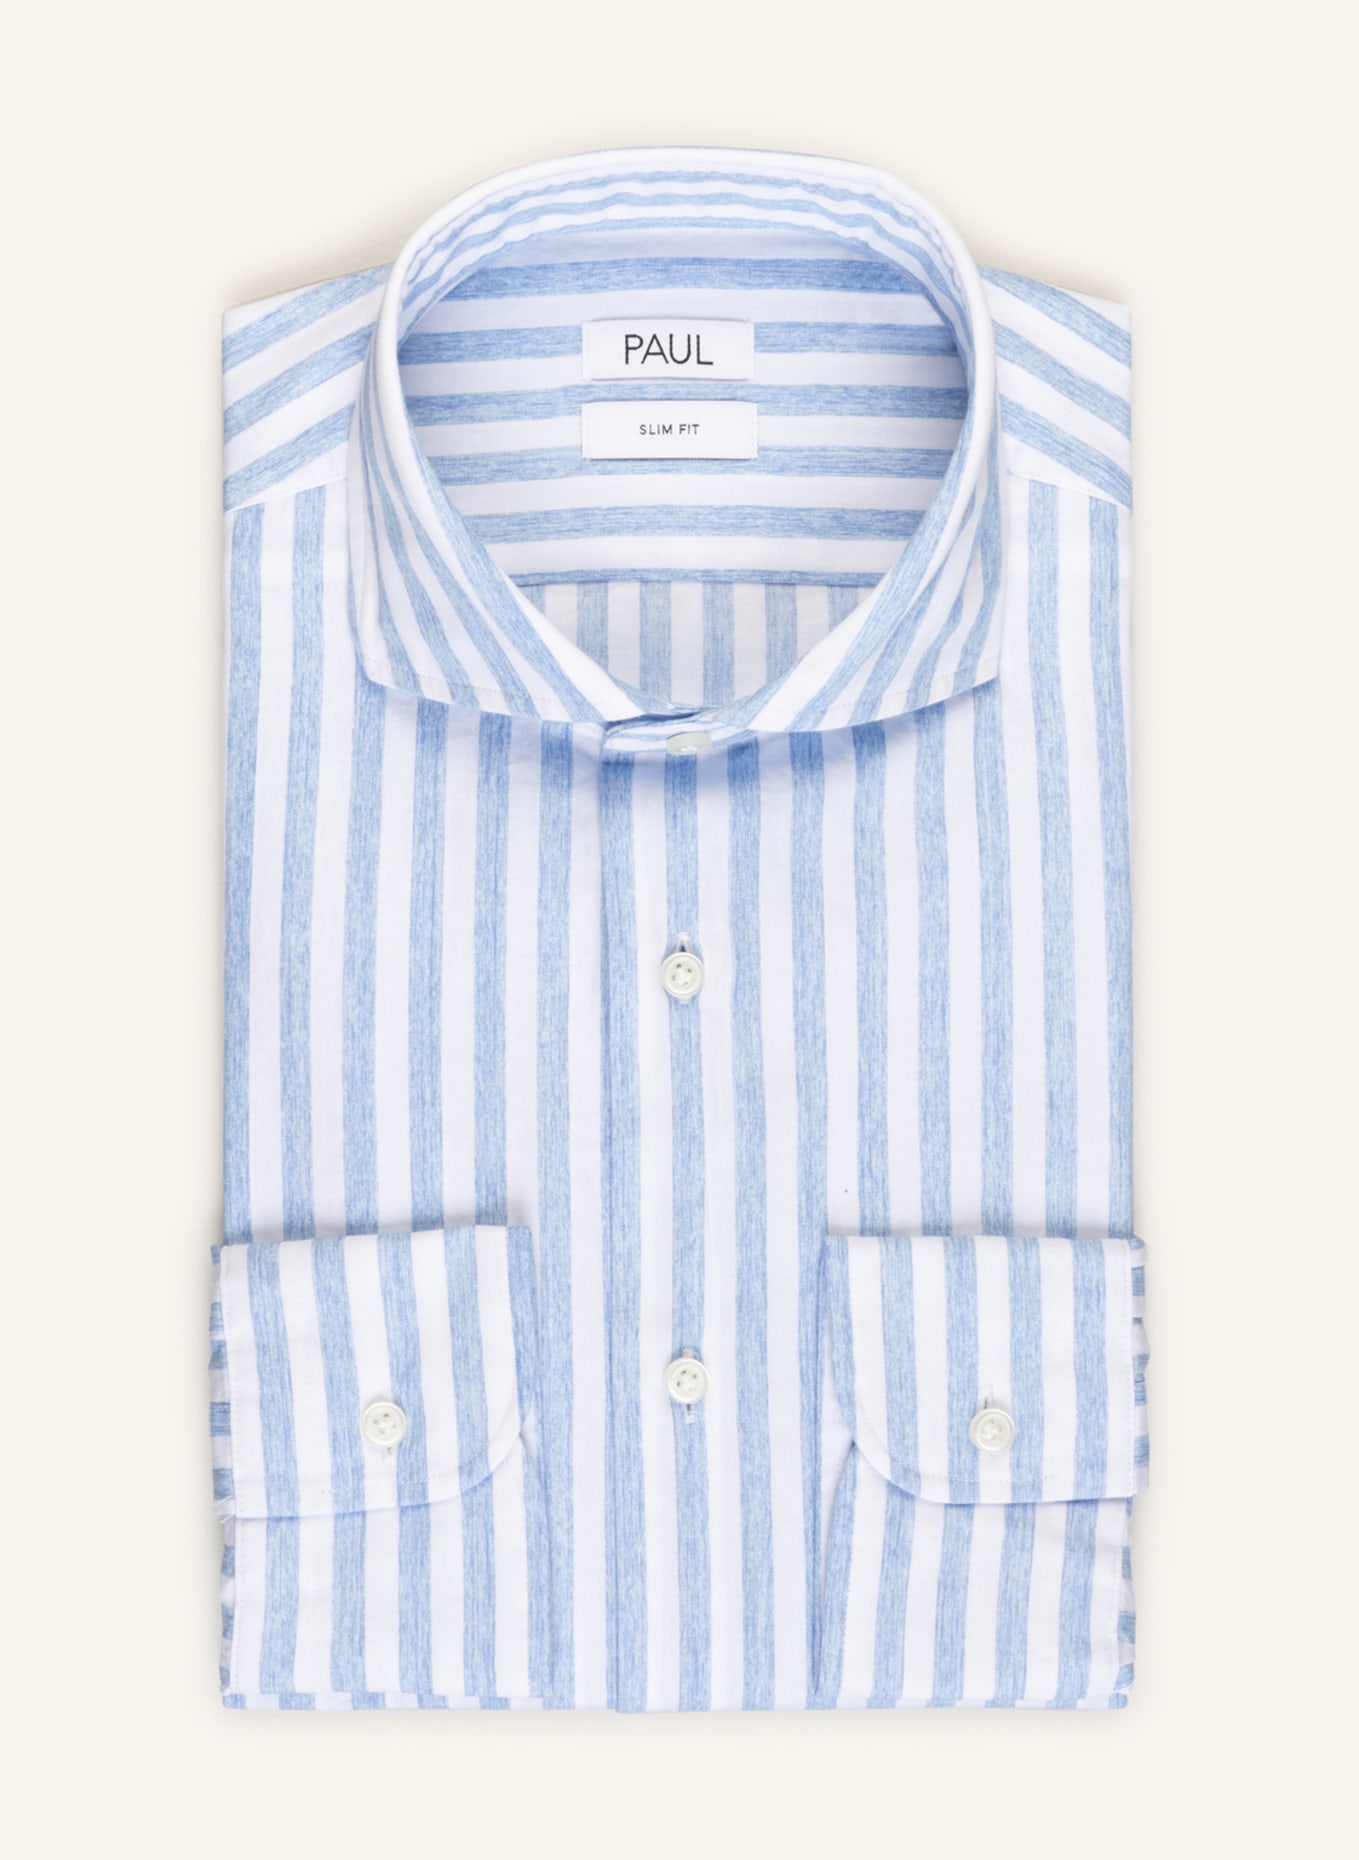 PAUL Shirt Slim Fit , Color: LIGHT BLUE/ WHITE (Image 1)